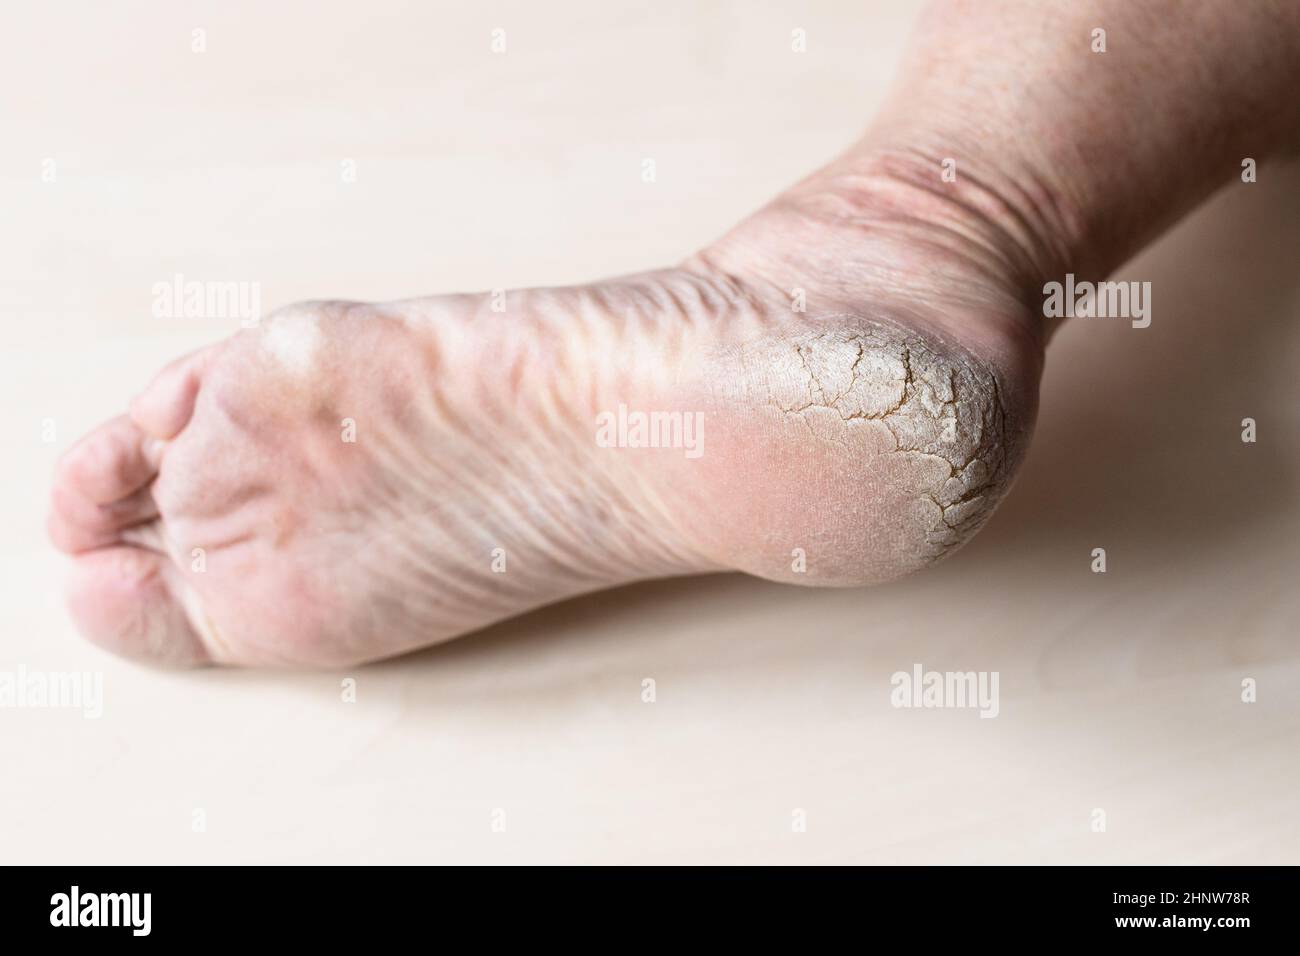 pelle screpolata ruvida sul tallone del piede maschio in primo piano Foto Stock